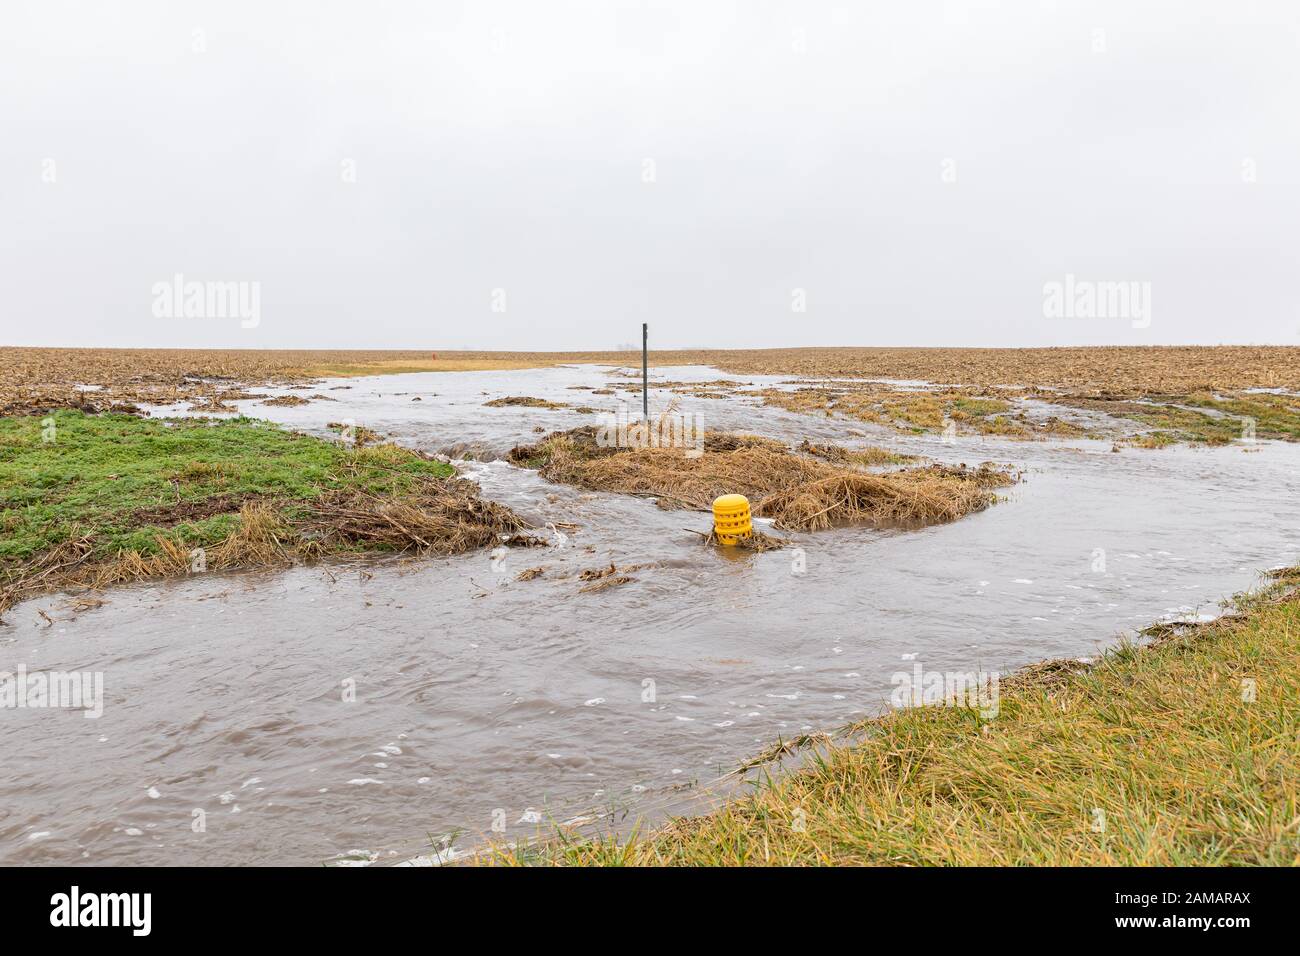 Januar Gewitter mit starken Regen verursacht Überschwemmung in Feldern, Gräben und Bodenerosion von fließendem Wasser Runoff Stockfoto